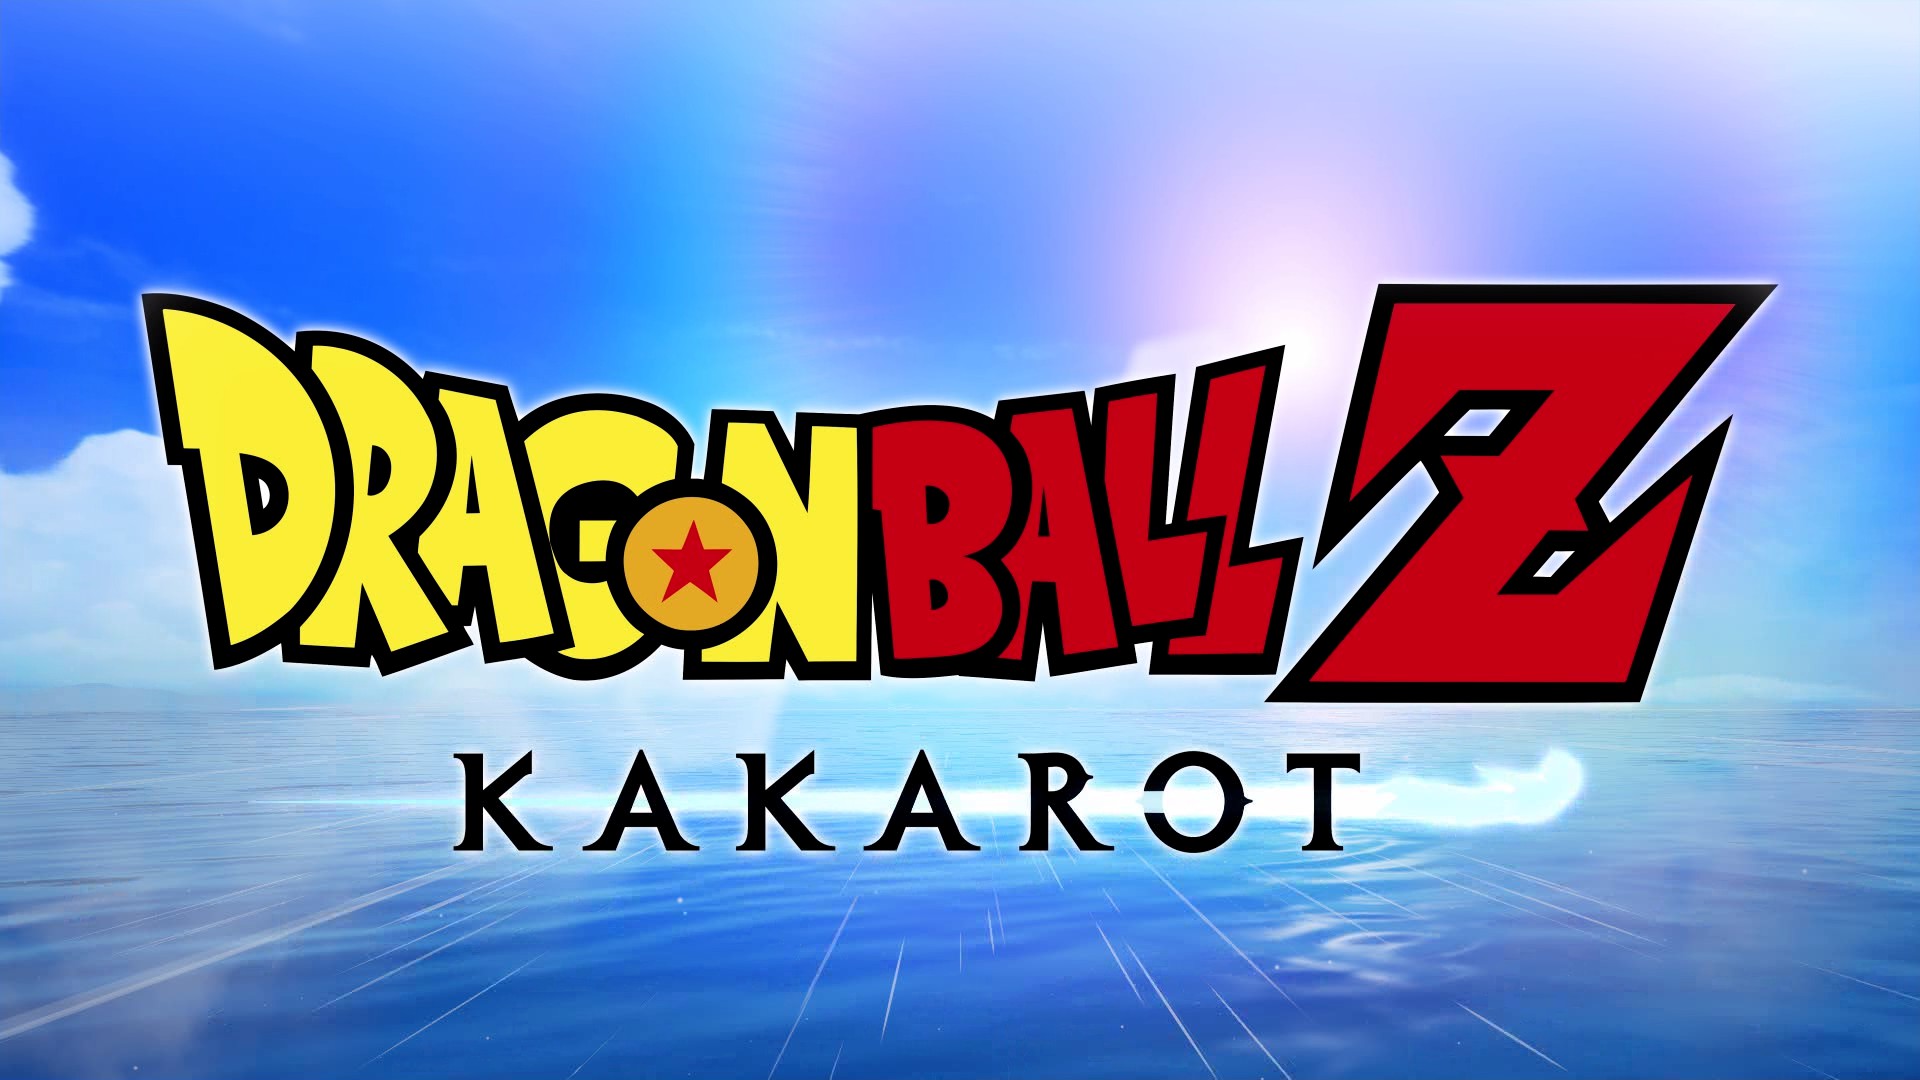 [Review] Dragonball Z: Kakarot ร่วมออกผจญภัยไปพร้อมกับซุนโกคู ในโลกใบเดิมที่หลาย ๆ คนคิดถึง